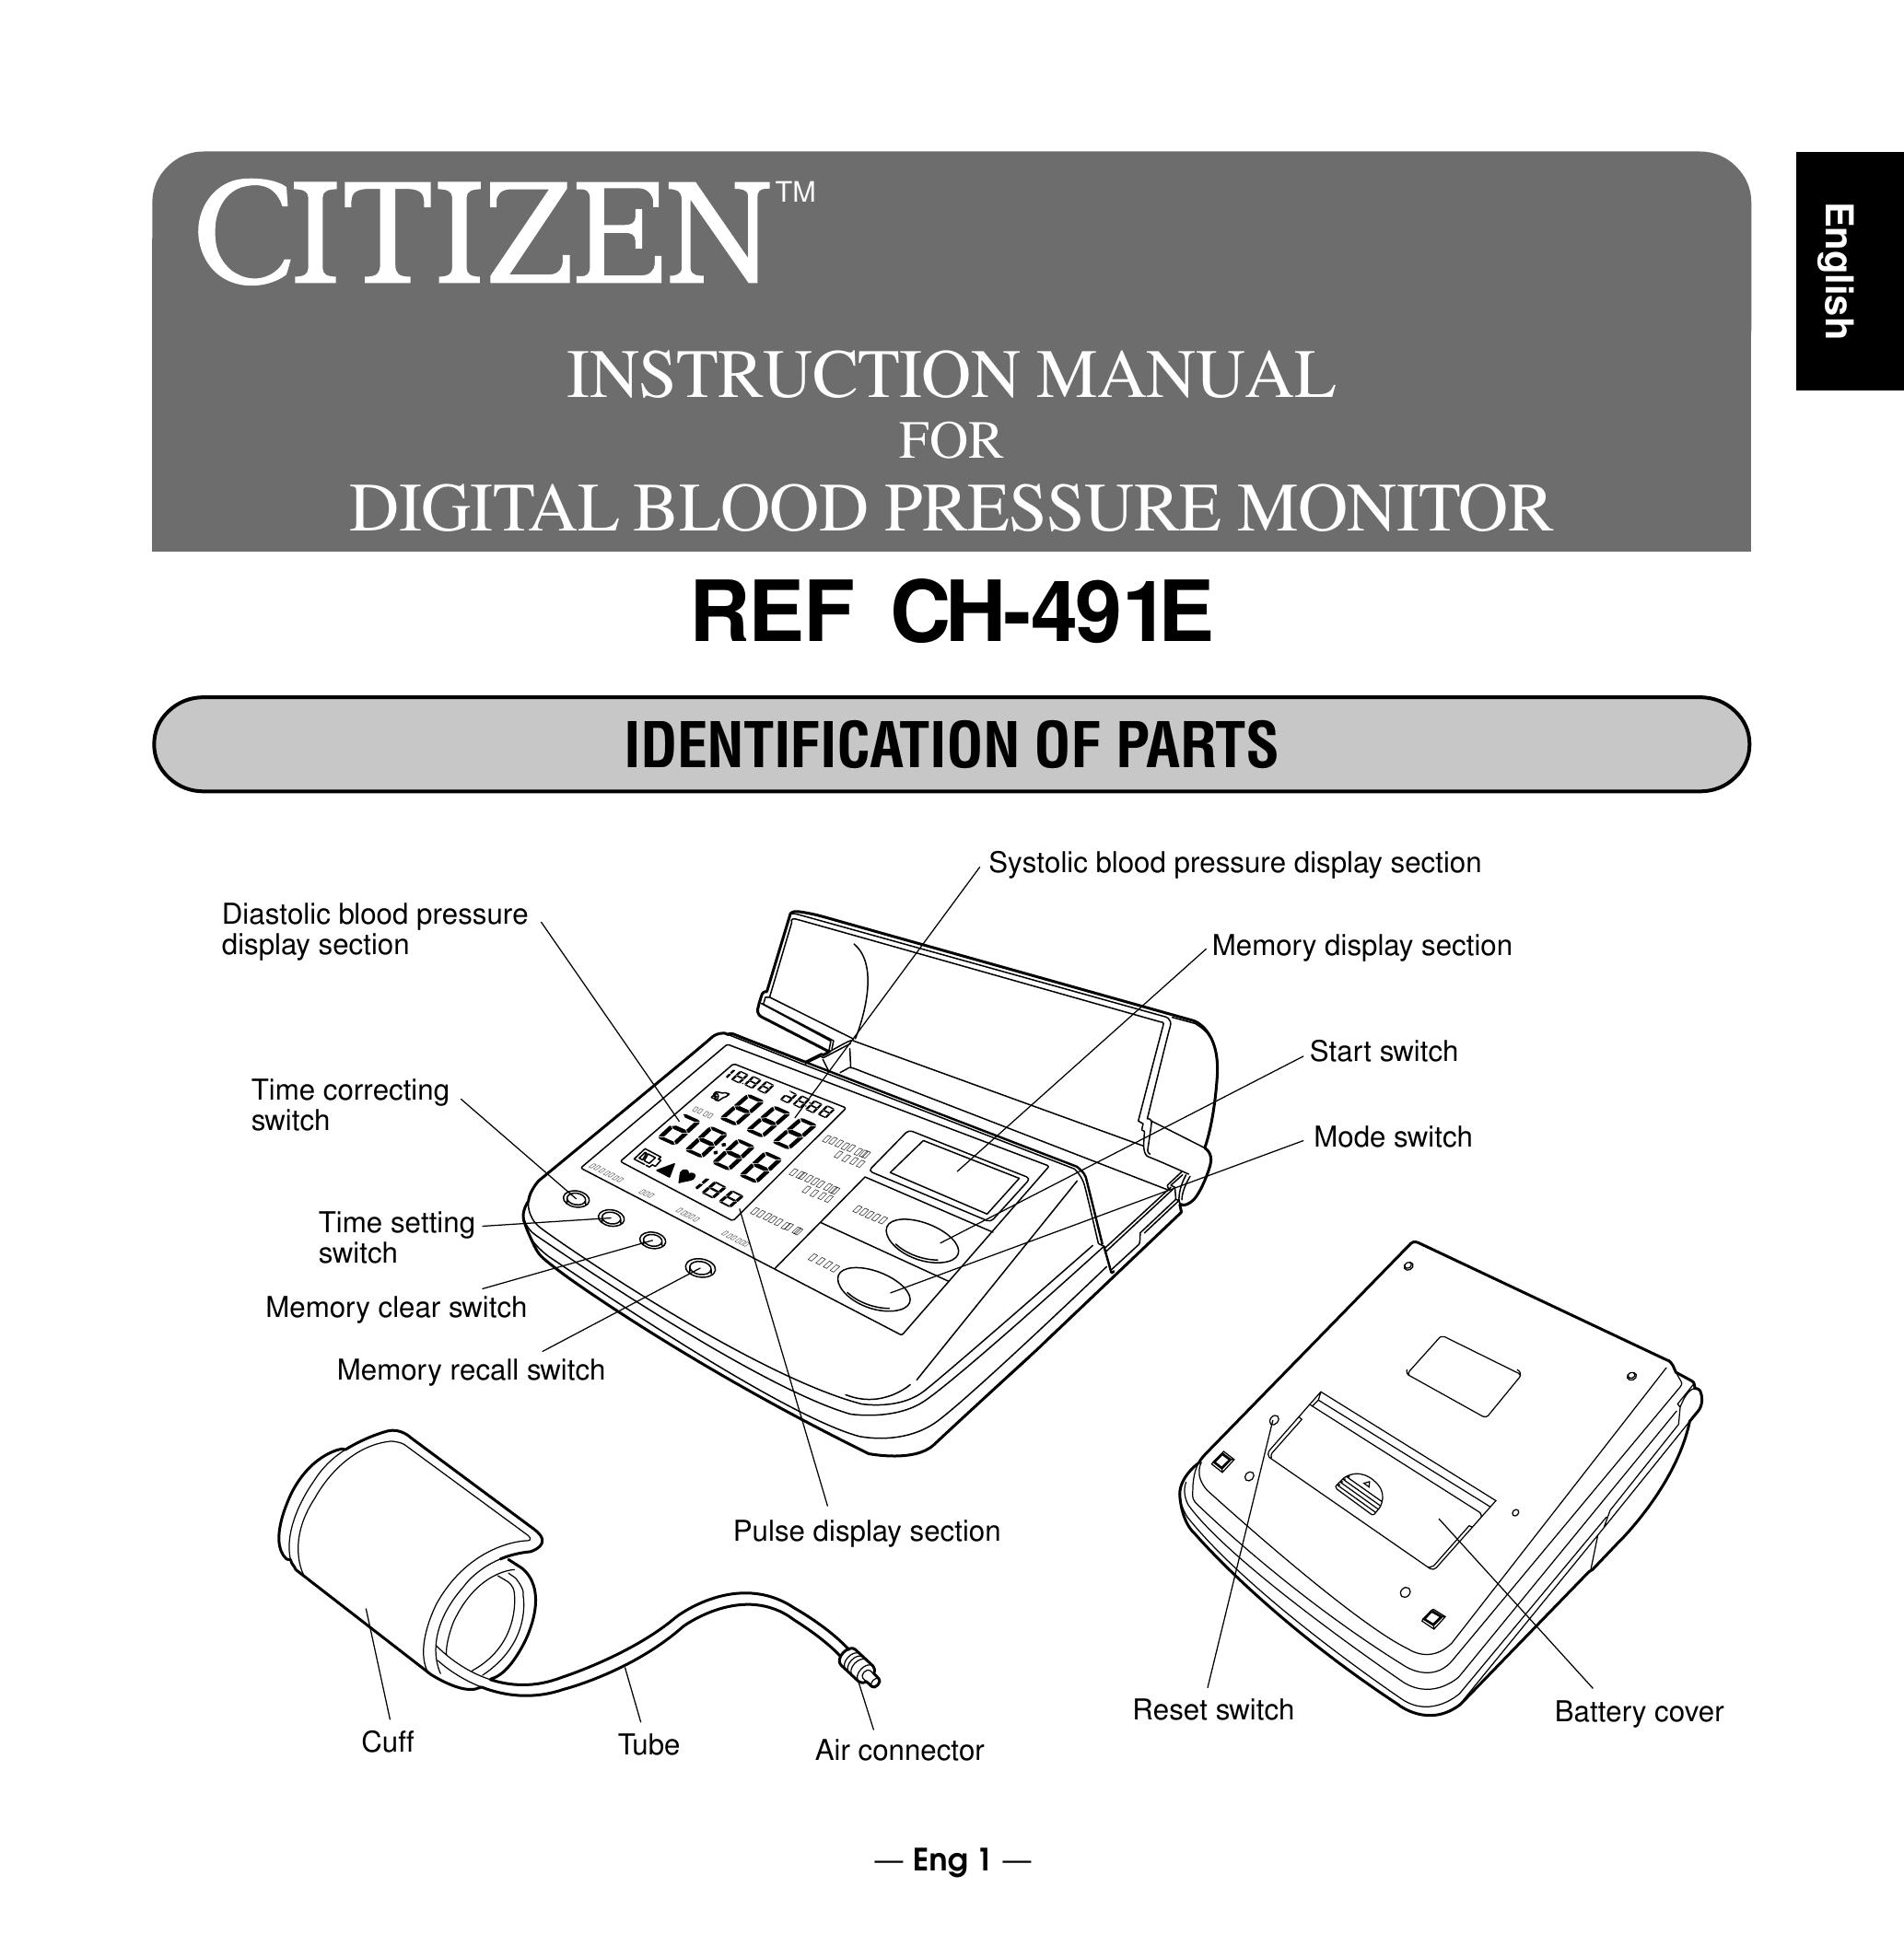 Citizen REF CH-491E Blood Pressure Monitor User Manual